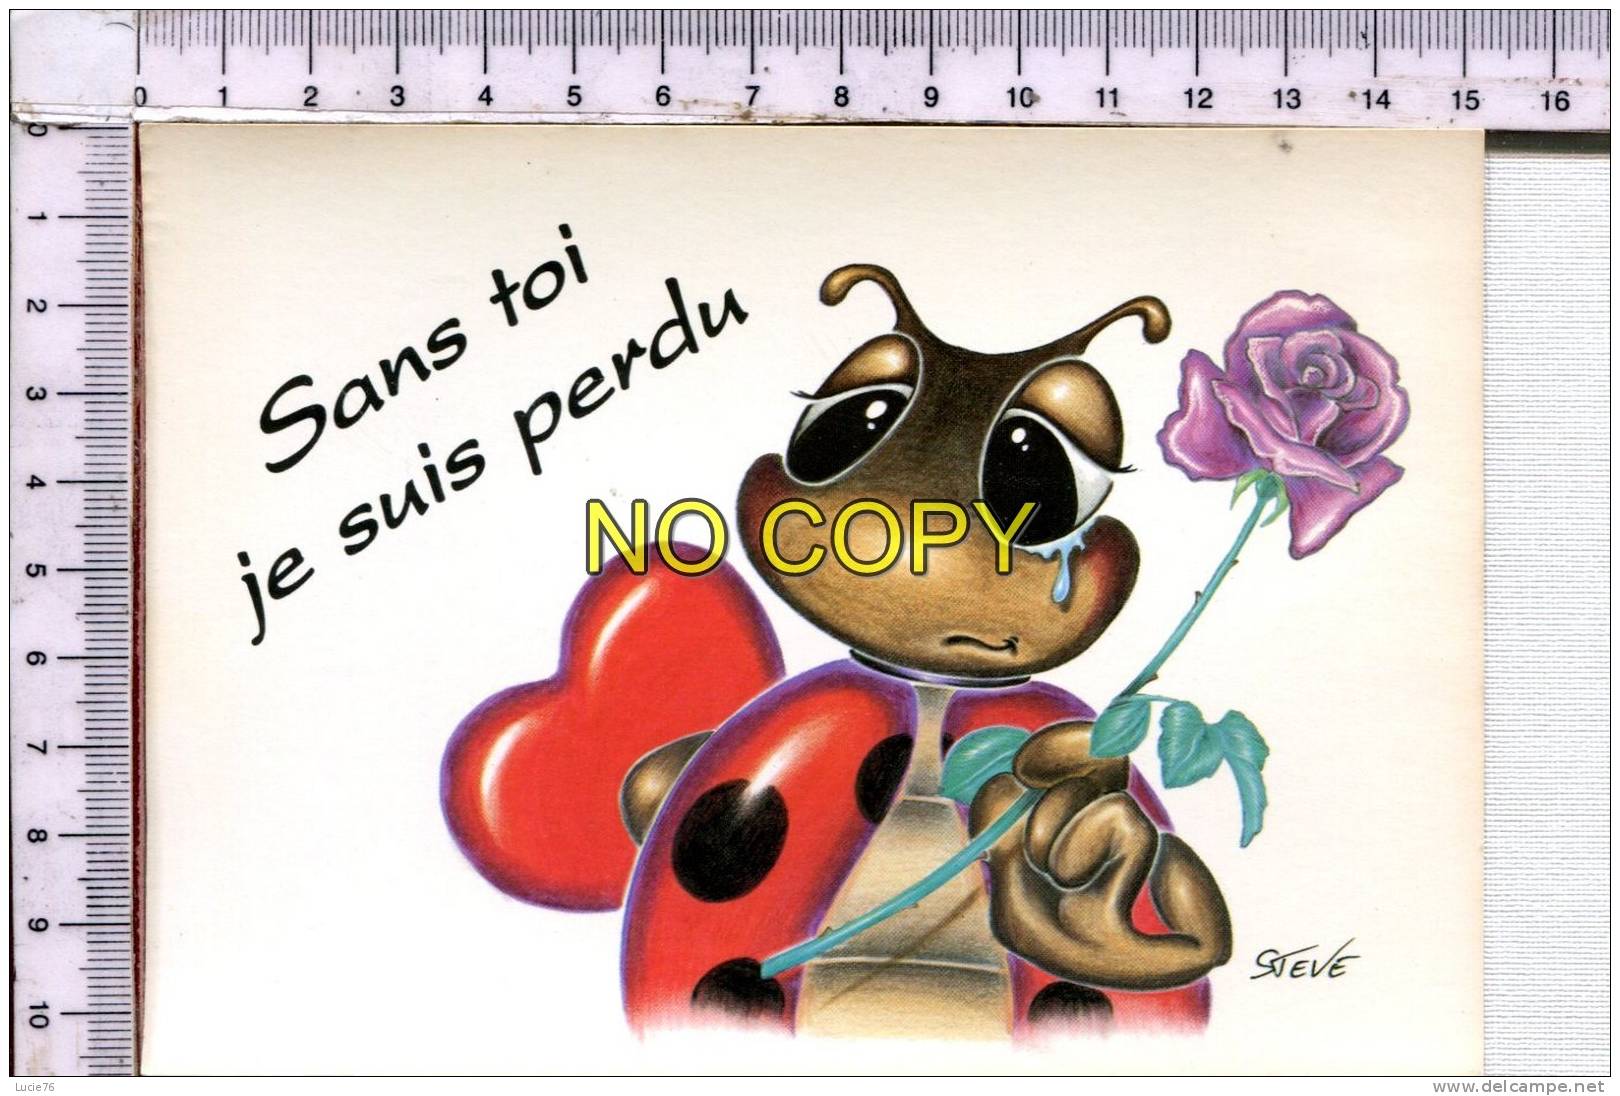 COCCINELLE  - BEETLES    -  Illustration  Humoristique -    Sans Toi Je Suis Perdu - Insectes